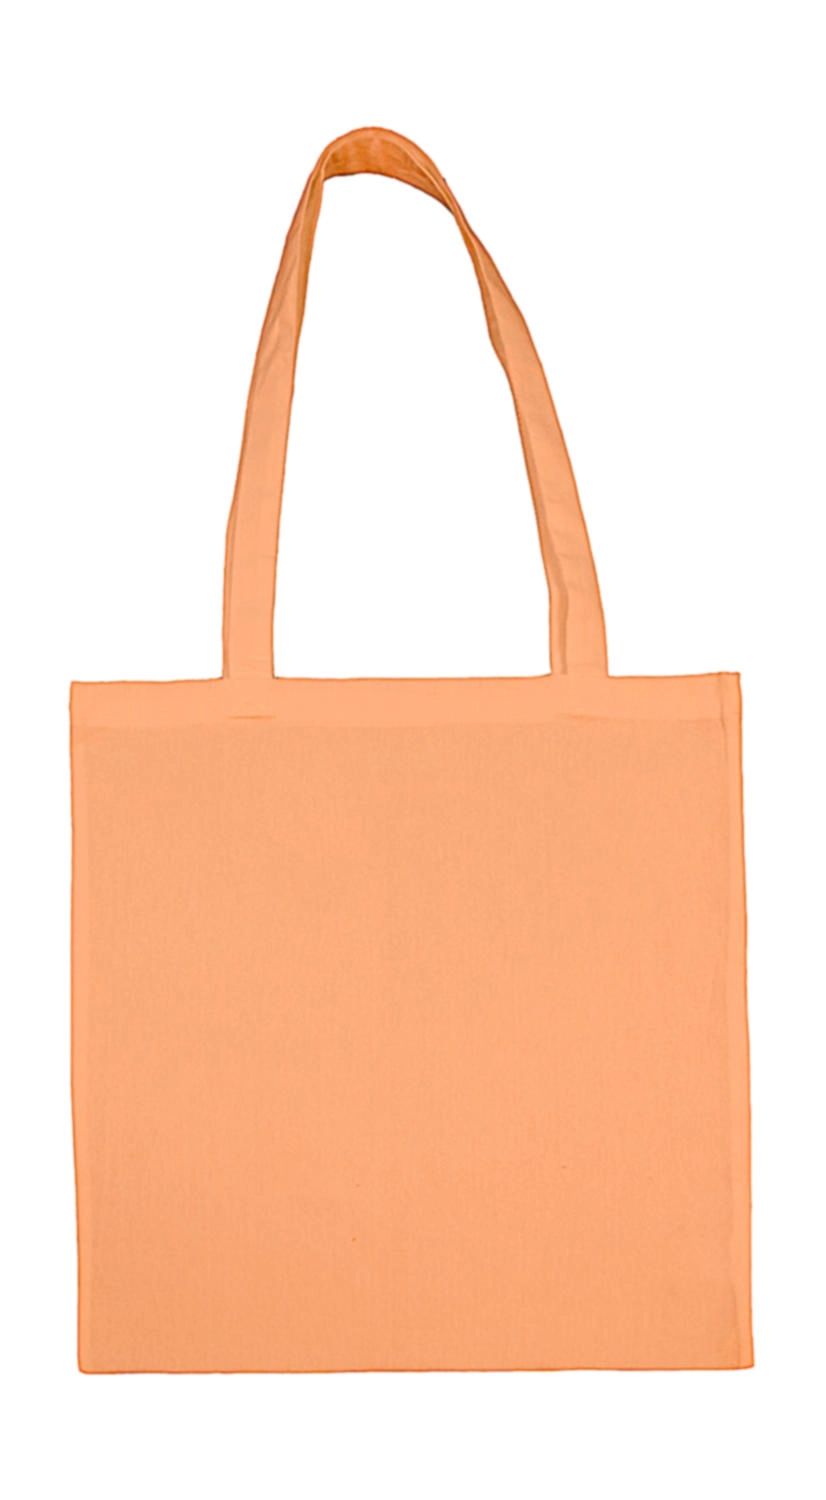 Cotton Bag LH zum Besticken und Bedrucken in der Farbe Rose Quartz mit Ihren Logo, Schriftzug oder Motiv.